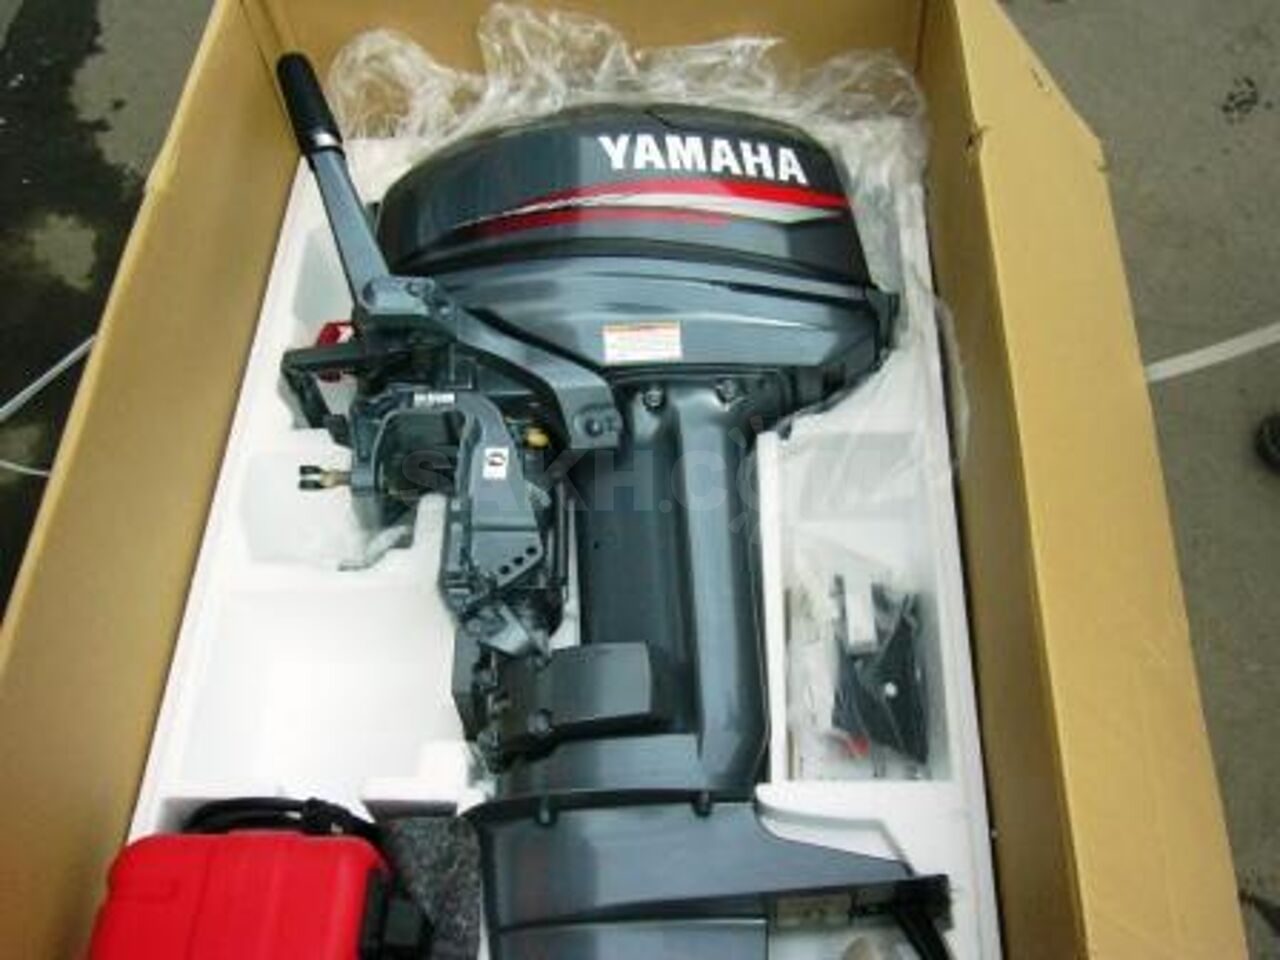 Купить новый мотор ямаха 9.9. Лодочный мотор Yamaha 9.9. Мотор Yamaha 15. Yamaha 15 FMHS. Yamaha Лодочный мотор 25 л.